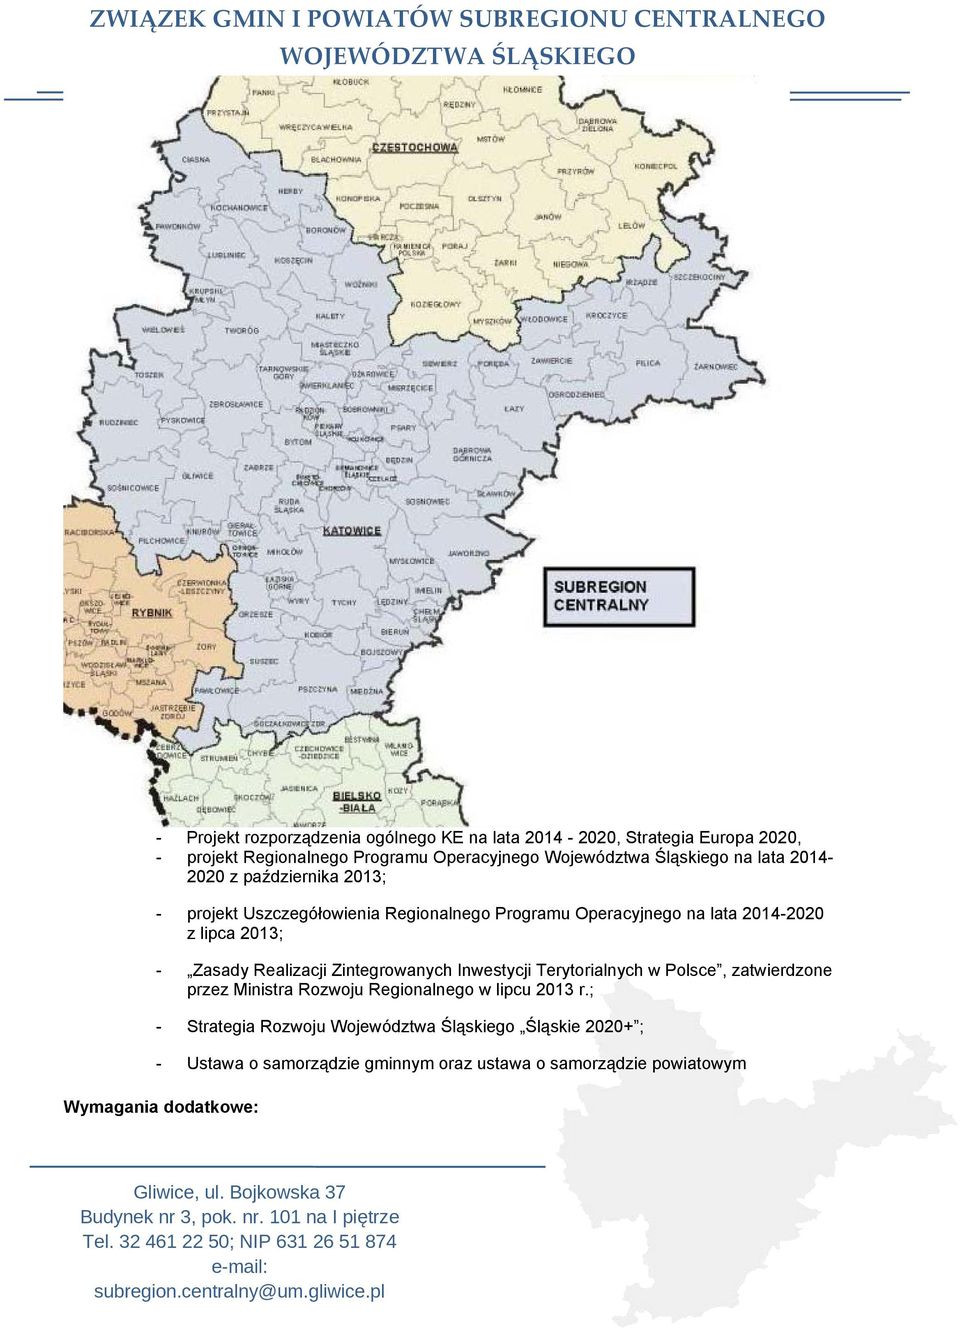 2013; - Zasady Realizacji Zintegrowanych Inwestycji Terytorialnych w Polsce, zatwierdzone przez Ministra Rozwoju Regionalnego w lipcu 2013 r.